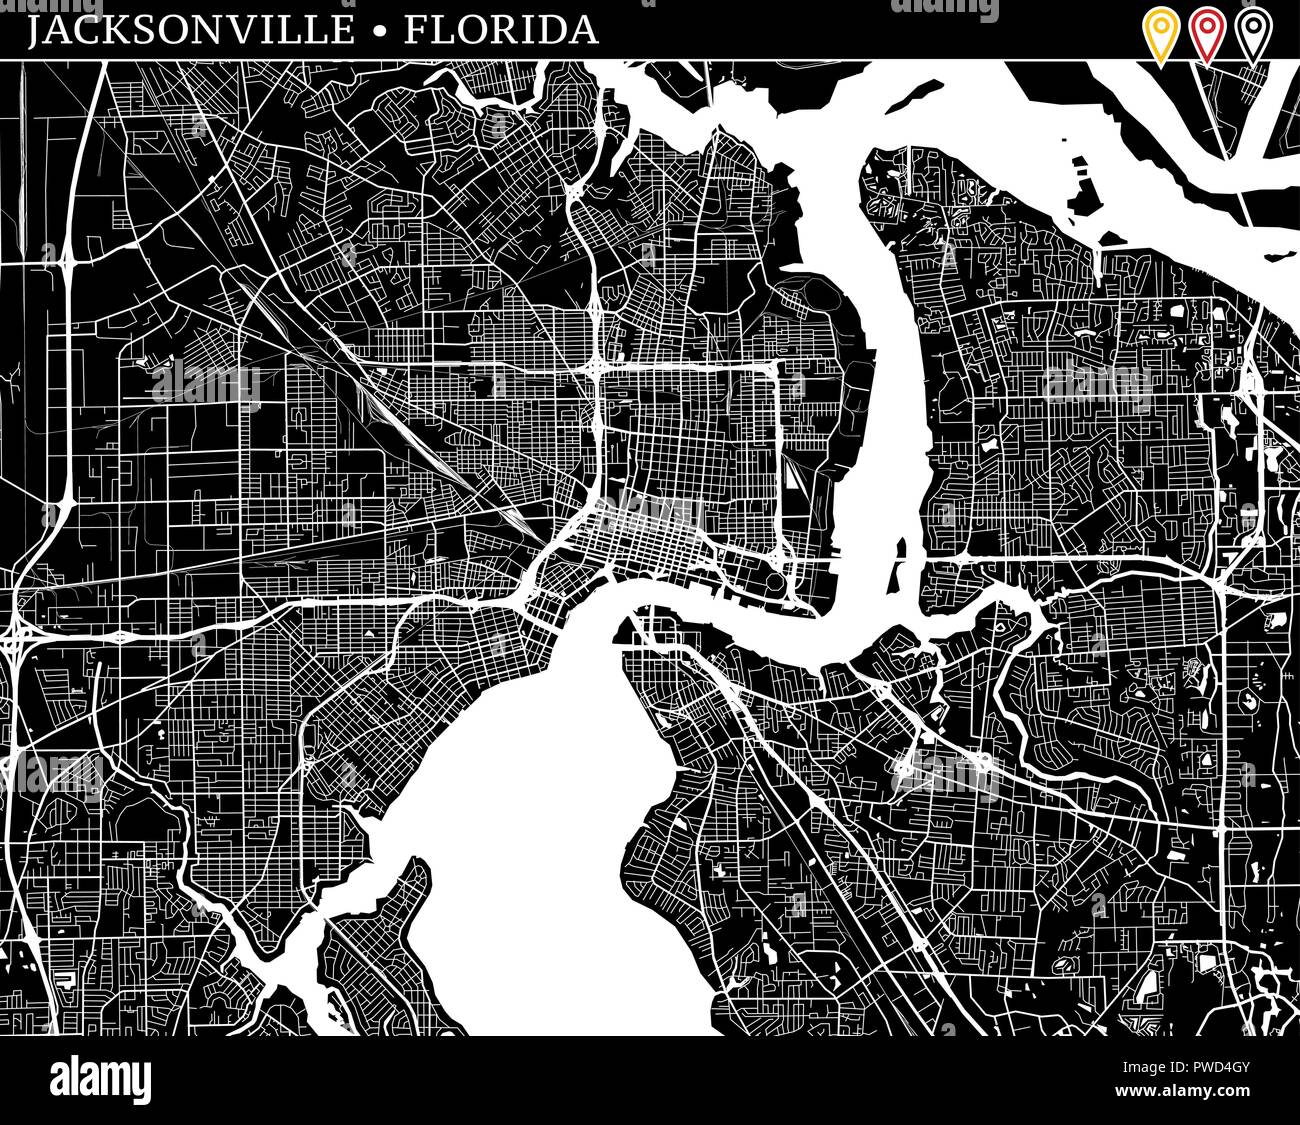 Einfache Karte von Jacksonville, Florida, USA. Schwarze und weiße Version für saubere Hintergründe und druckt. Diese Karte von Jacksonville enthält drei Markierungen wh Stock Vektor